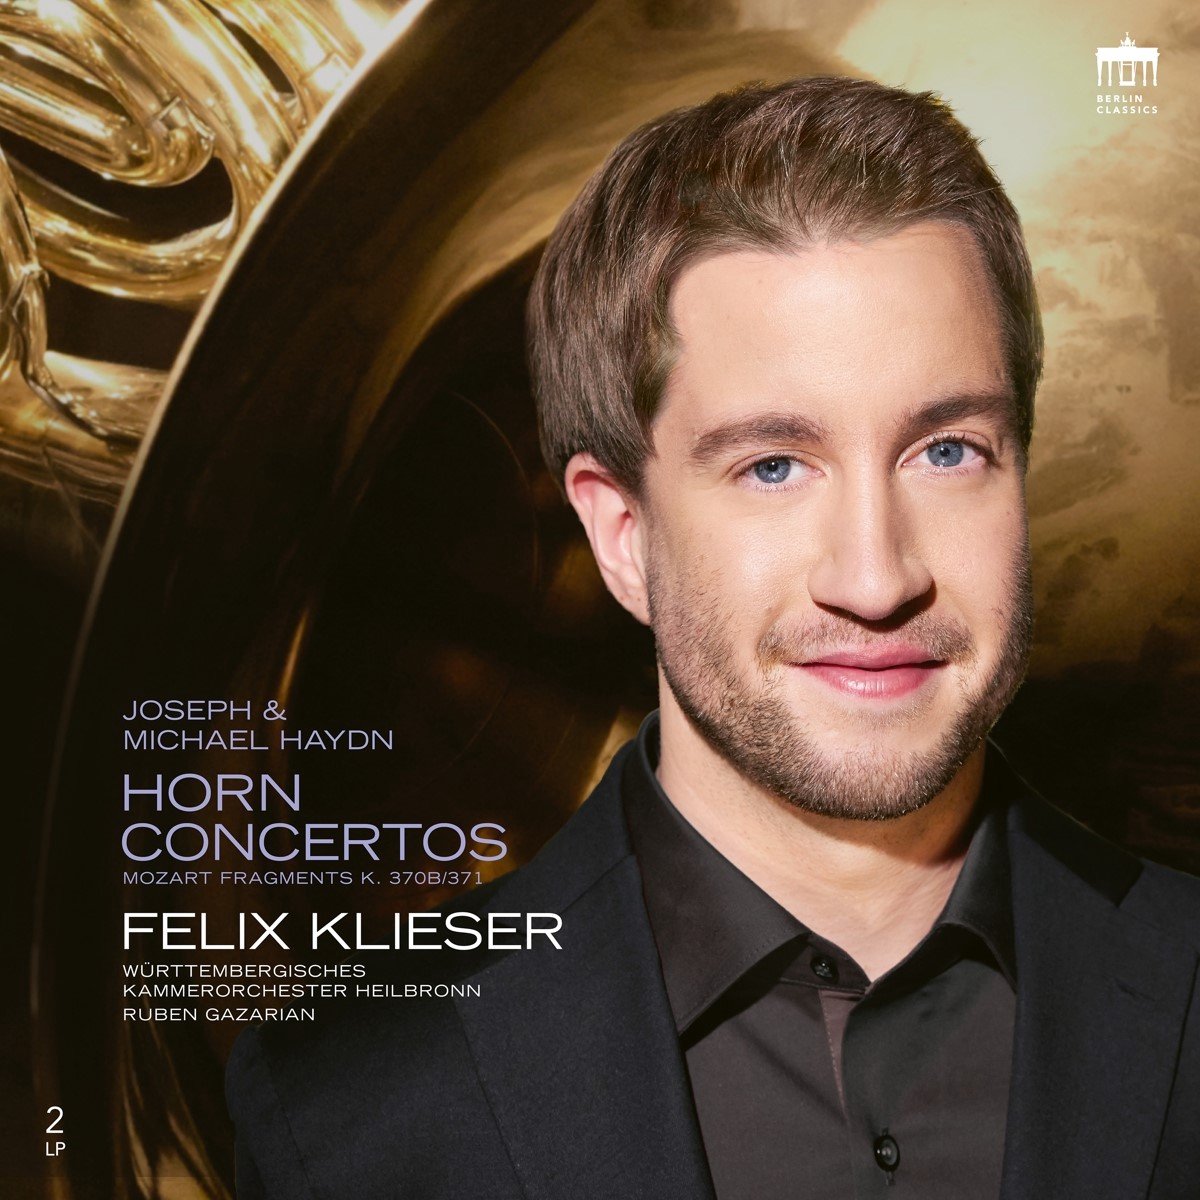 Felix Klieser - Hornkonzerte (2 LP)